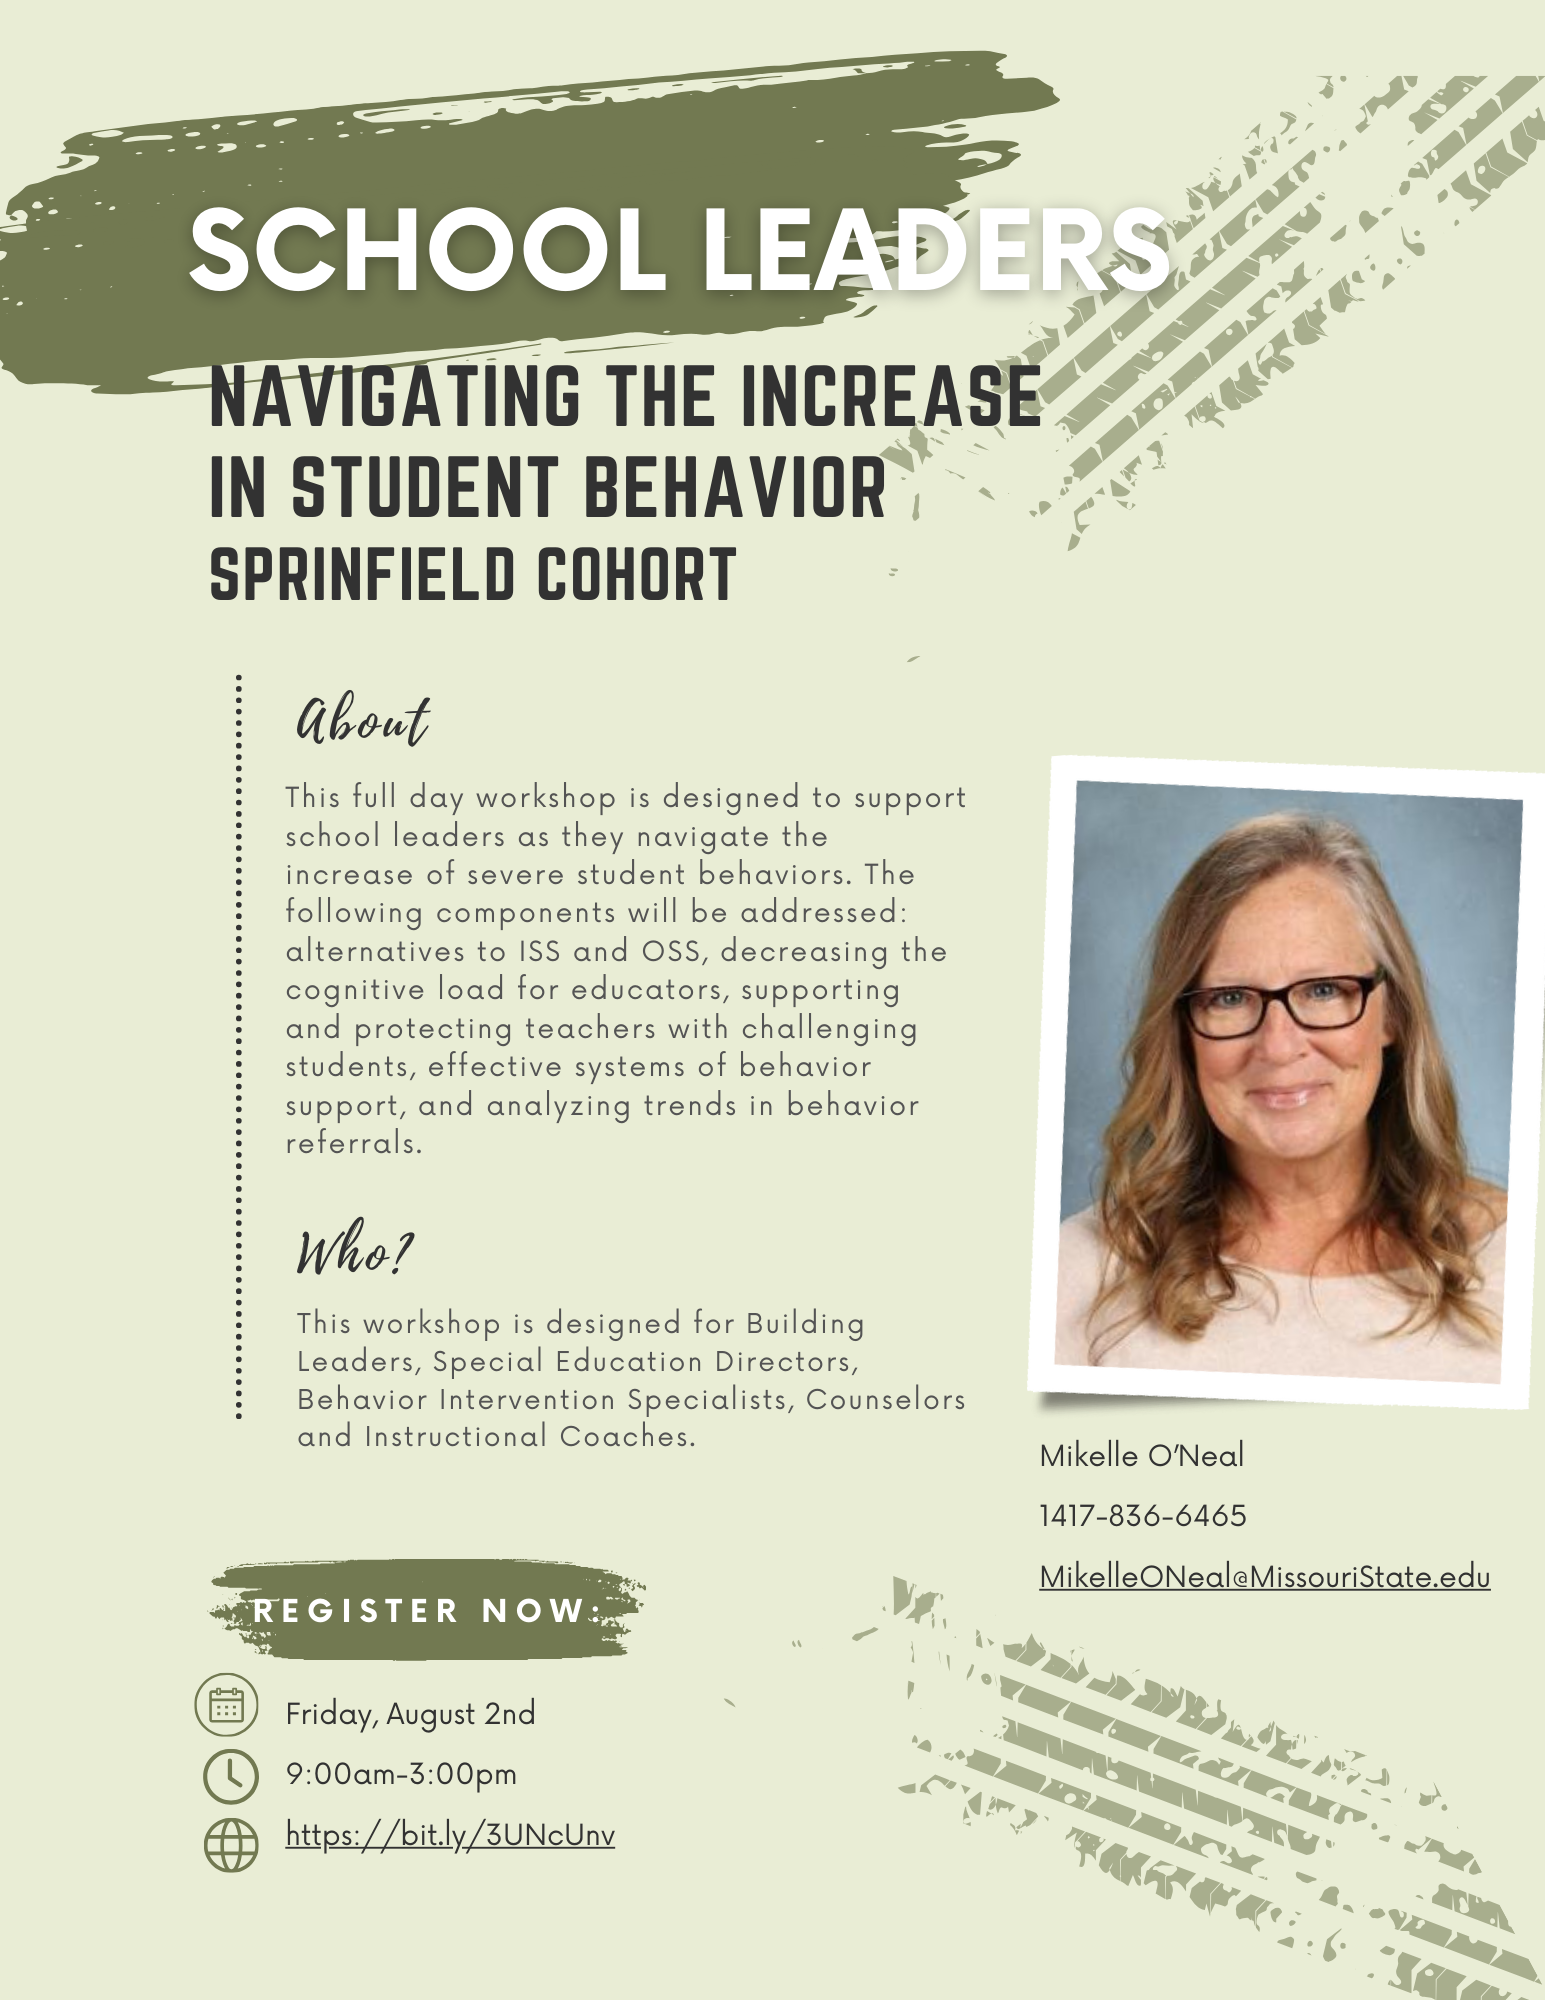 School Leaders - Navigating the Increase in Student Behavior